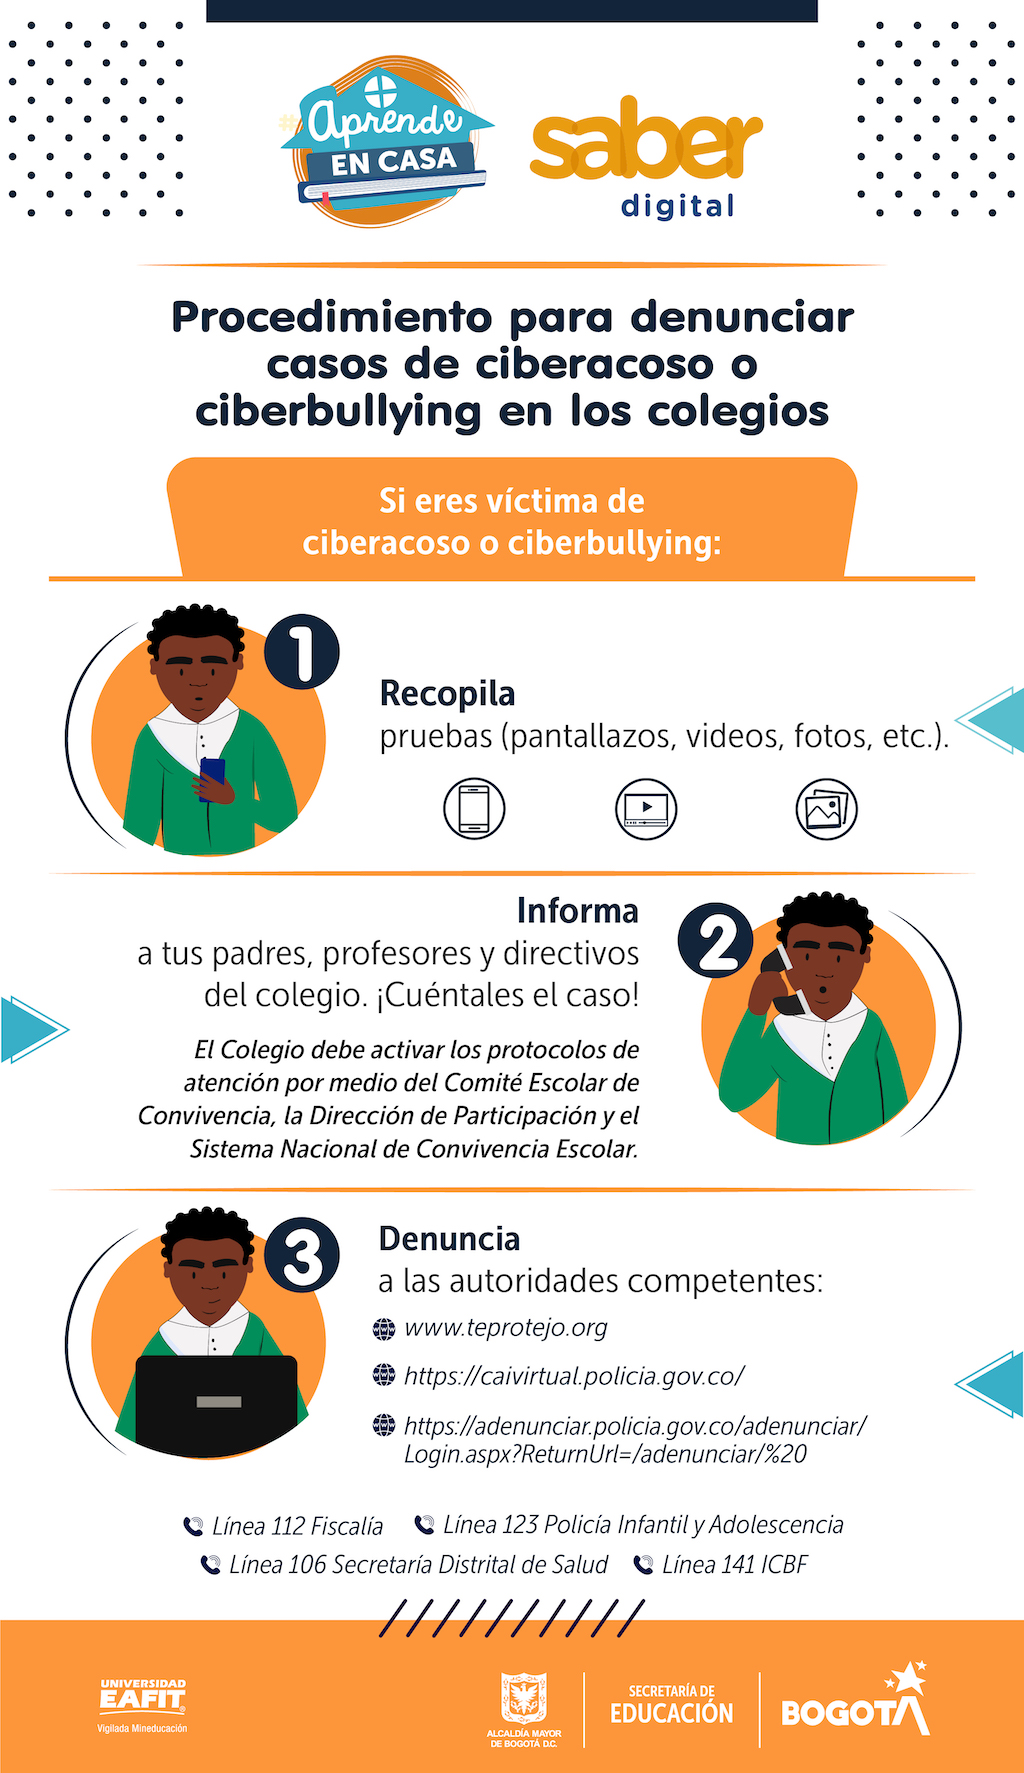 ¿Qué hacer si eres víctima de ciberacoso o ciberbullying? 